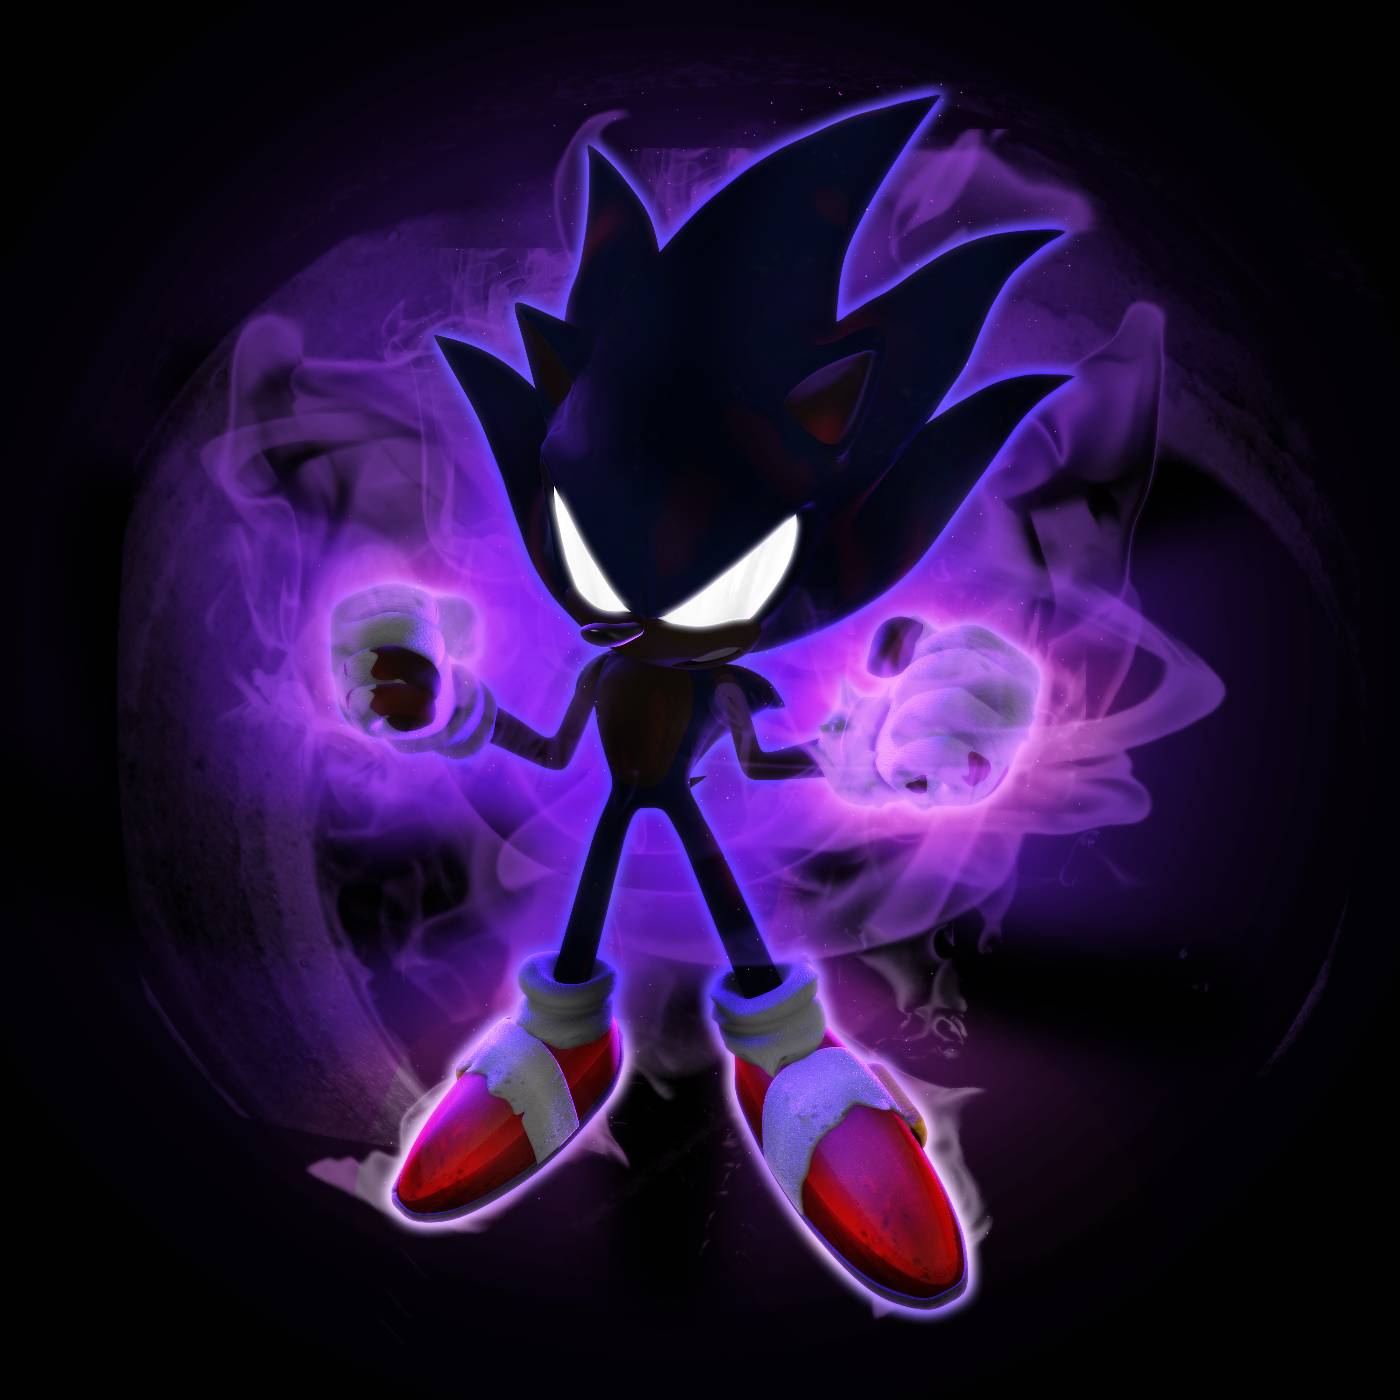 Dark Spine Sonic 2 Full Power by fnafan88888888 on DeviantArt